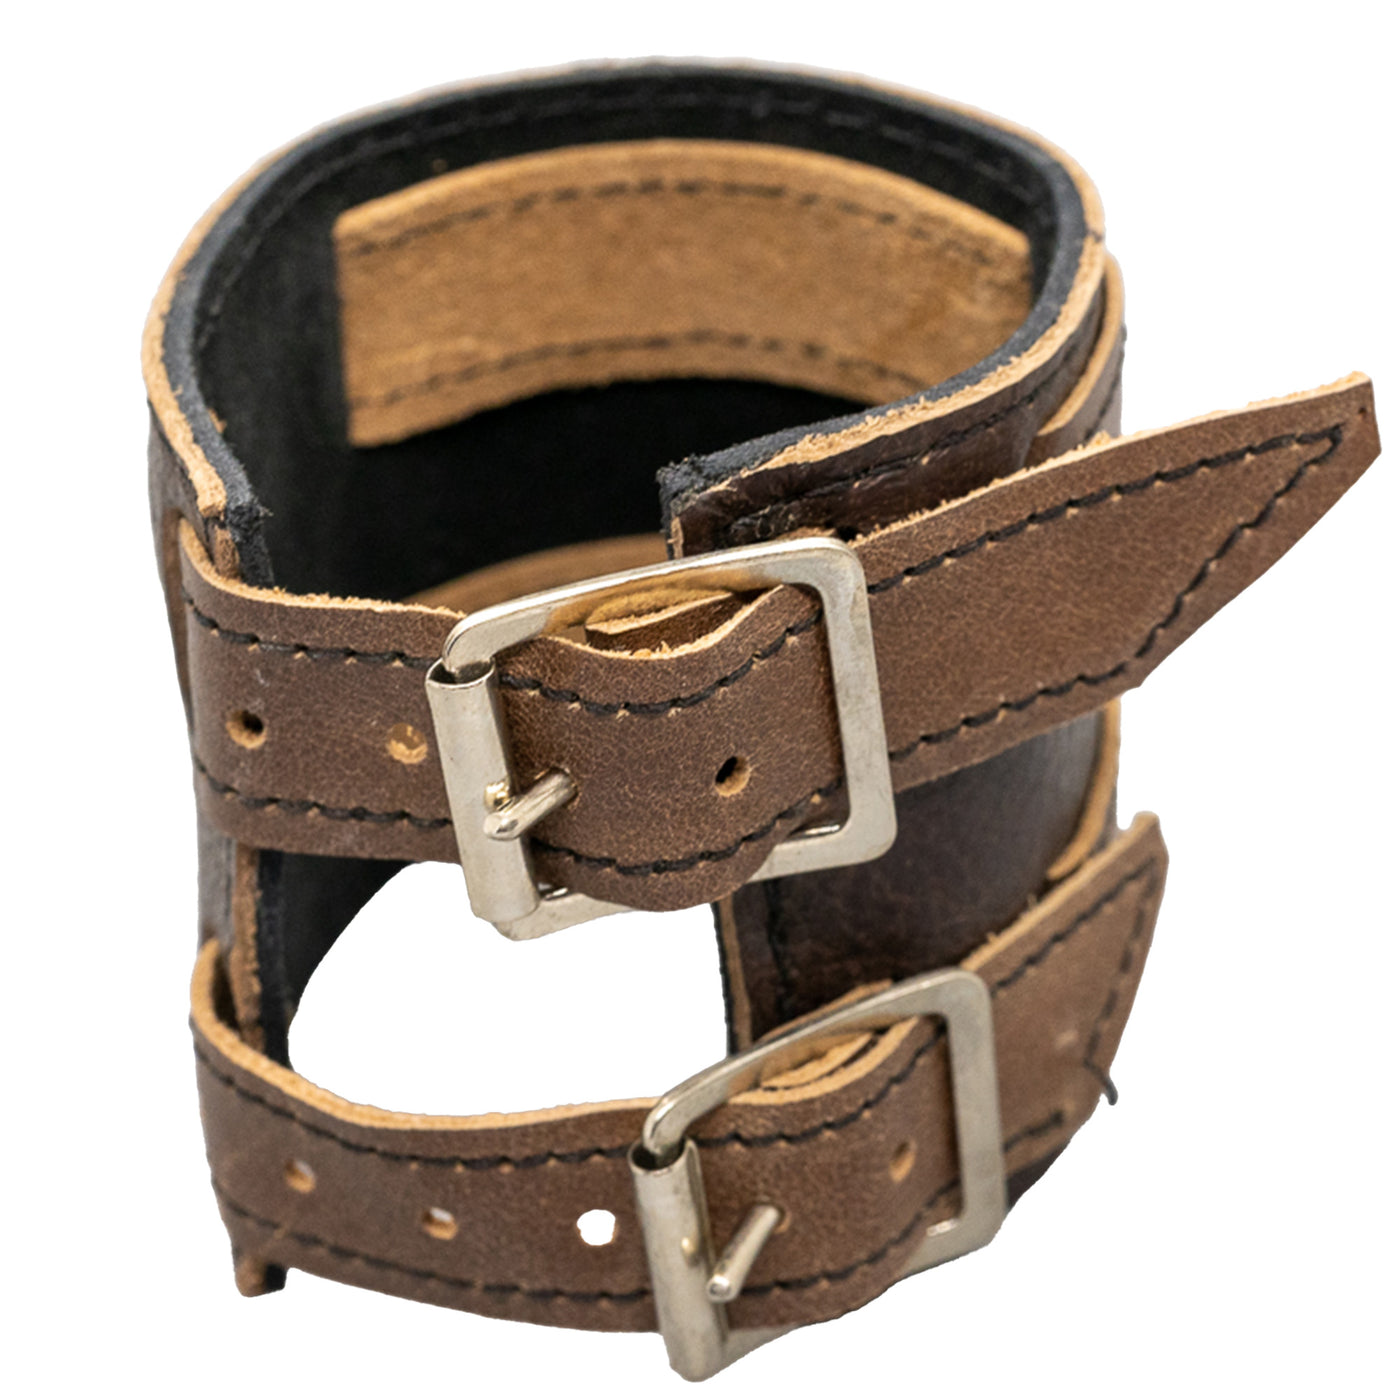 Iron Cross Leather wristband/cuff